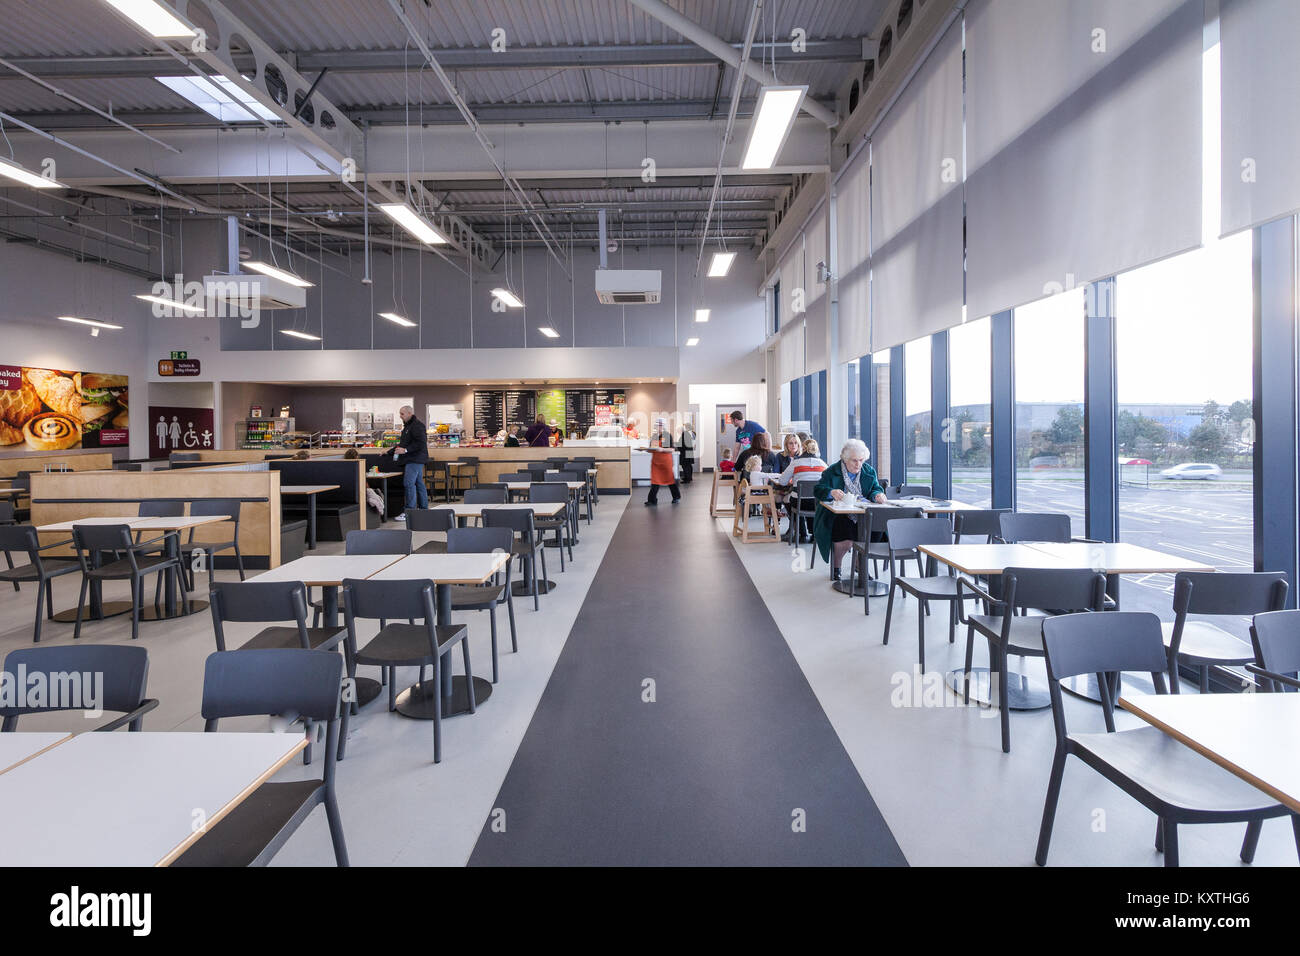 Cafe, Sainsbury's nouveau superstore, Thanet Kent, UK Banque D'Images